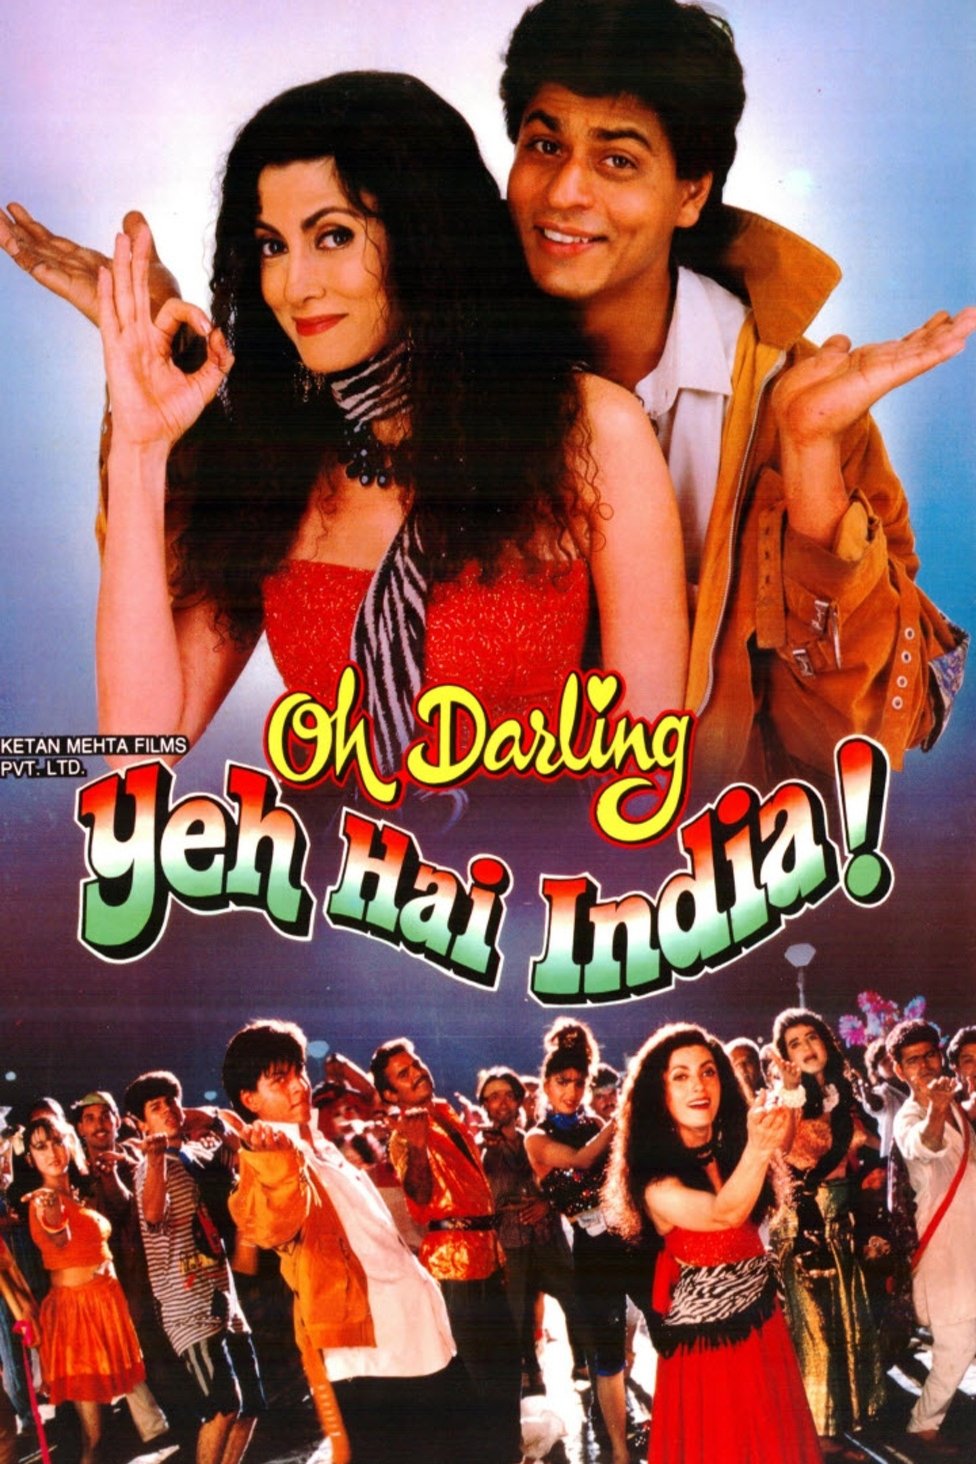 Hindi poster of the movie Oh Darling Yeh Hai India